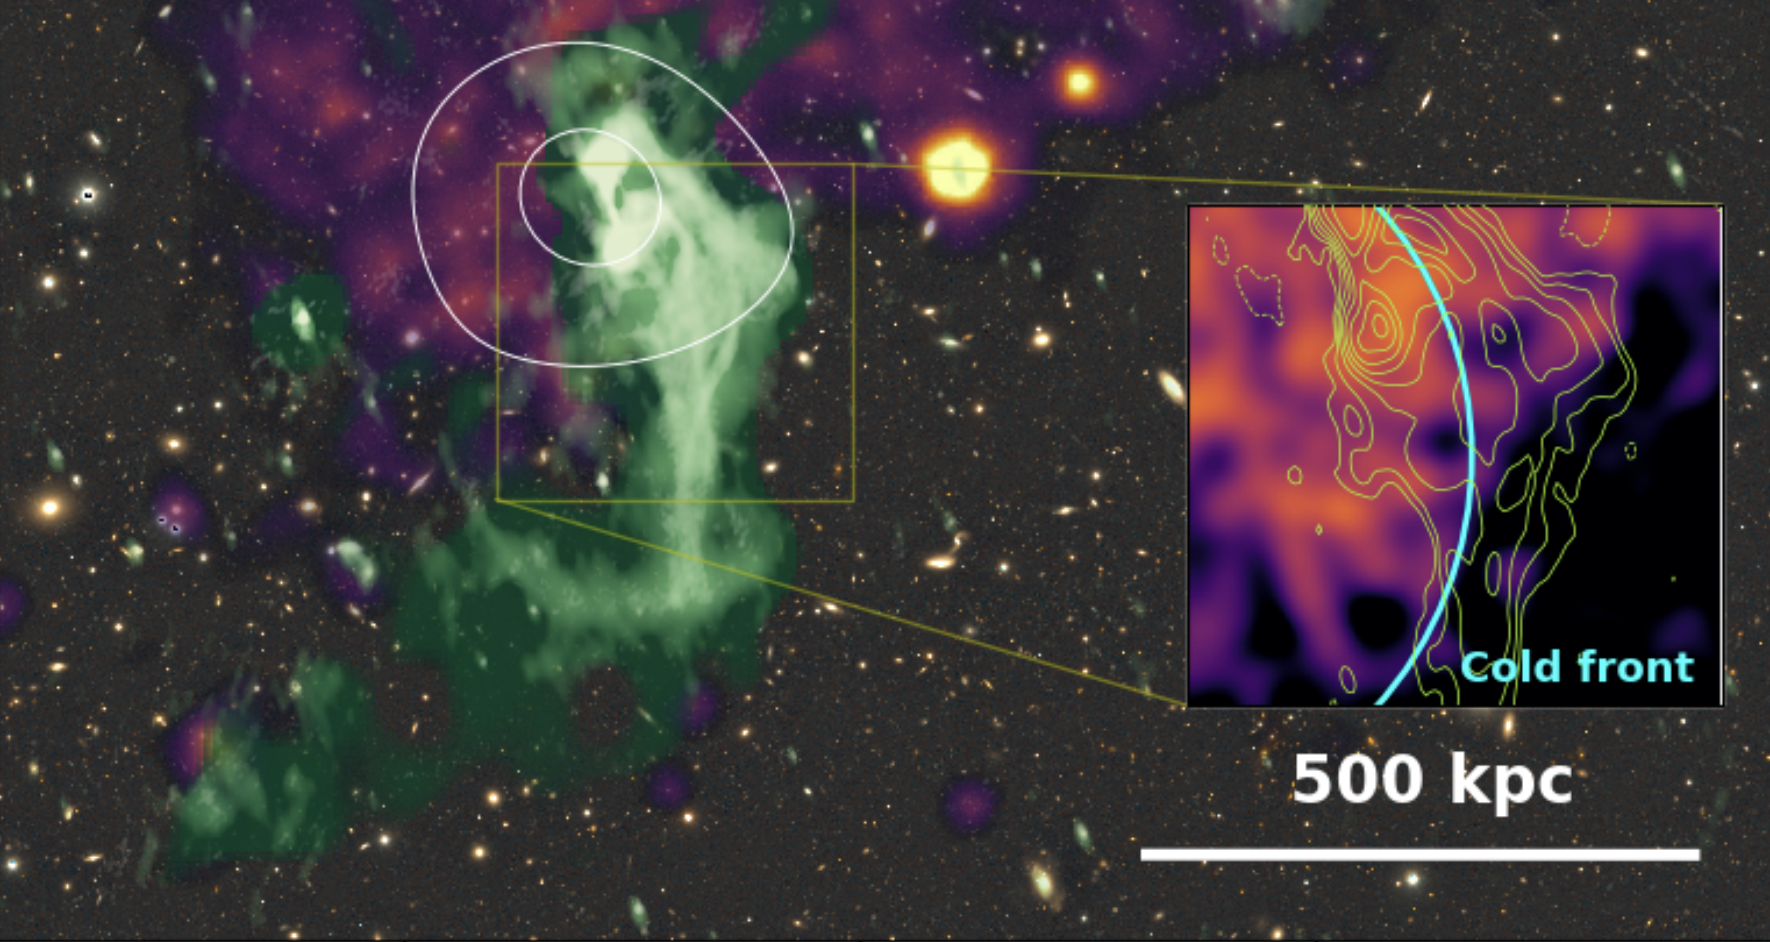 Savijeni radiomlaz velikih razmjera otkriven u galaktičkom skupu Abell 514